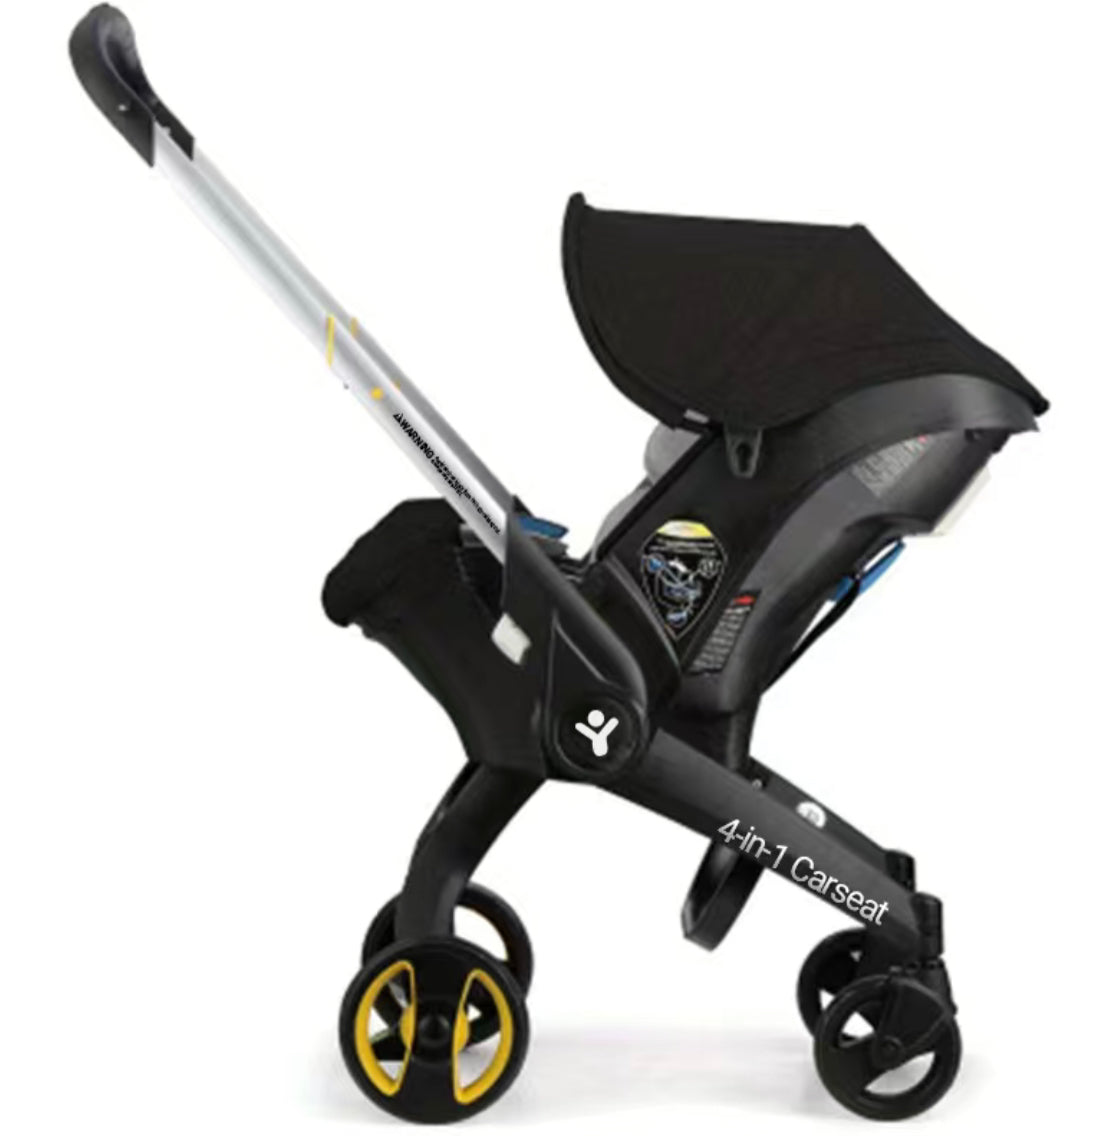 Baby 4in1 Stroller